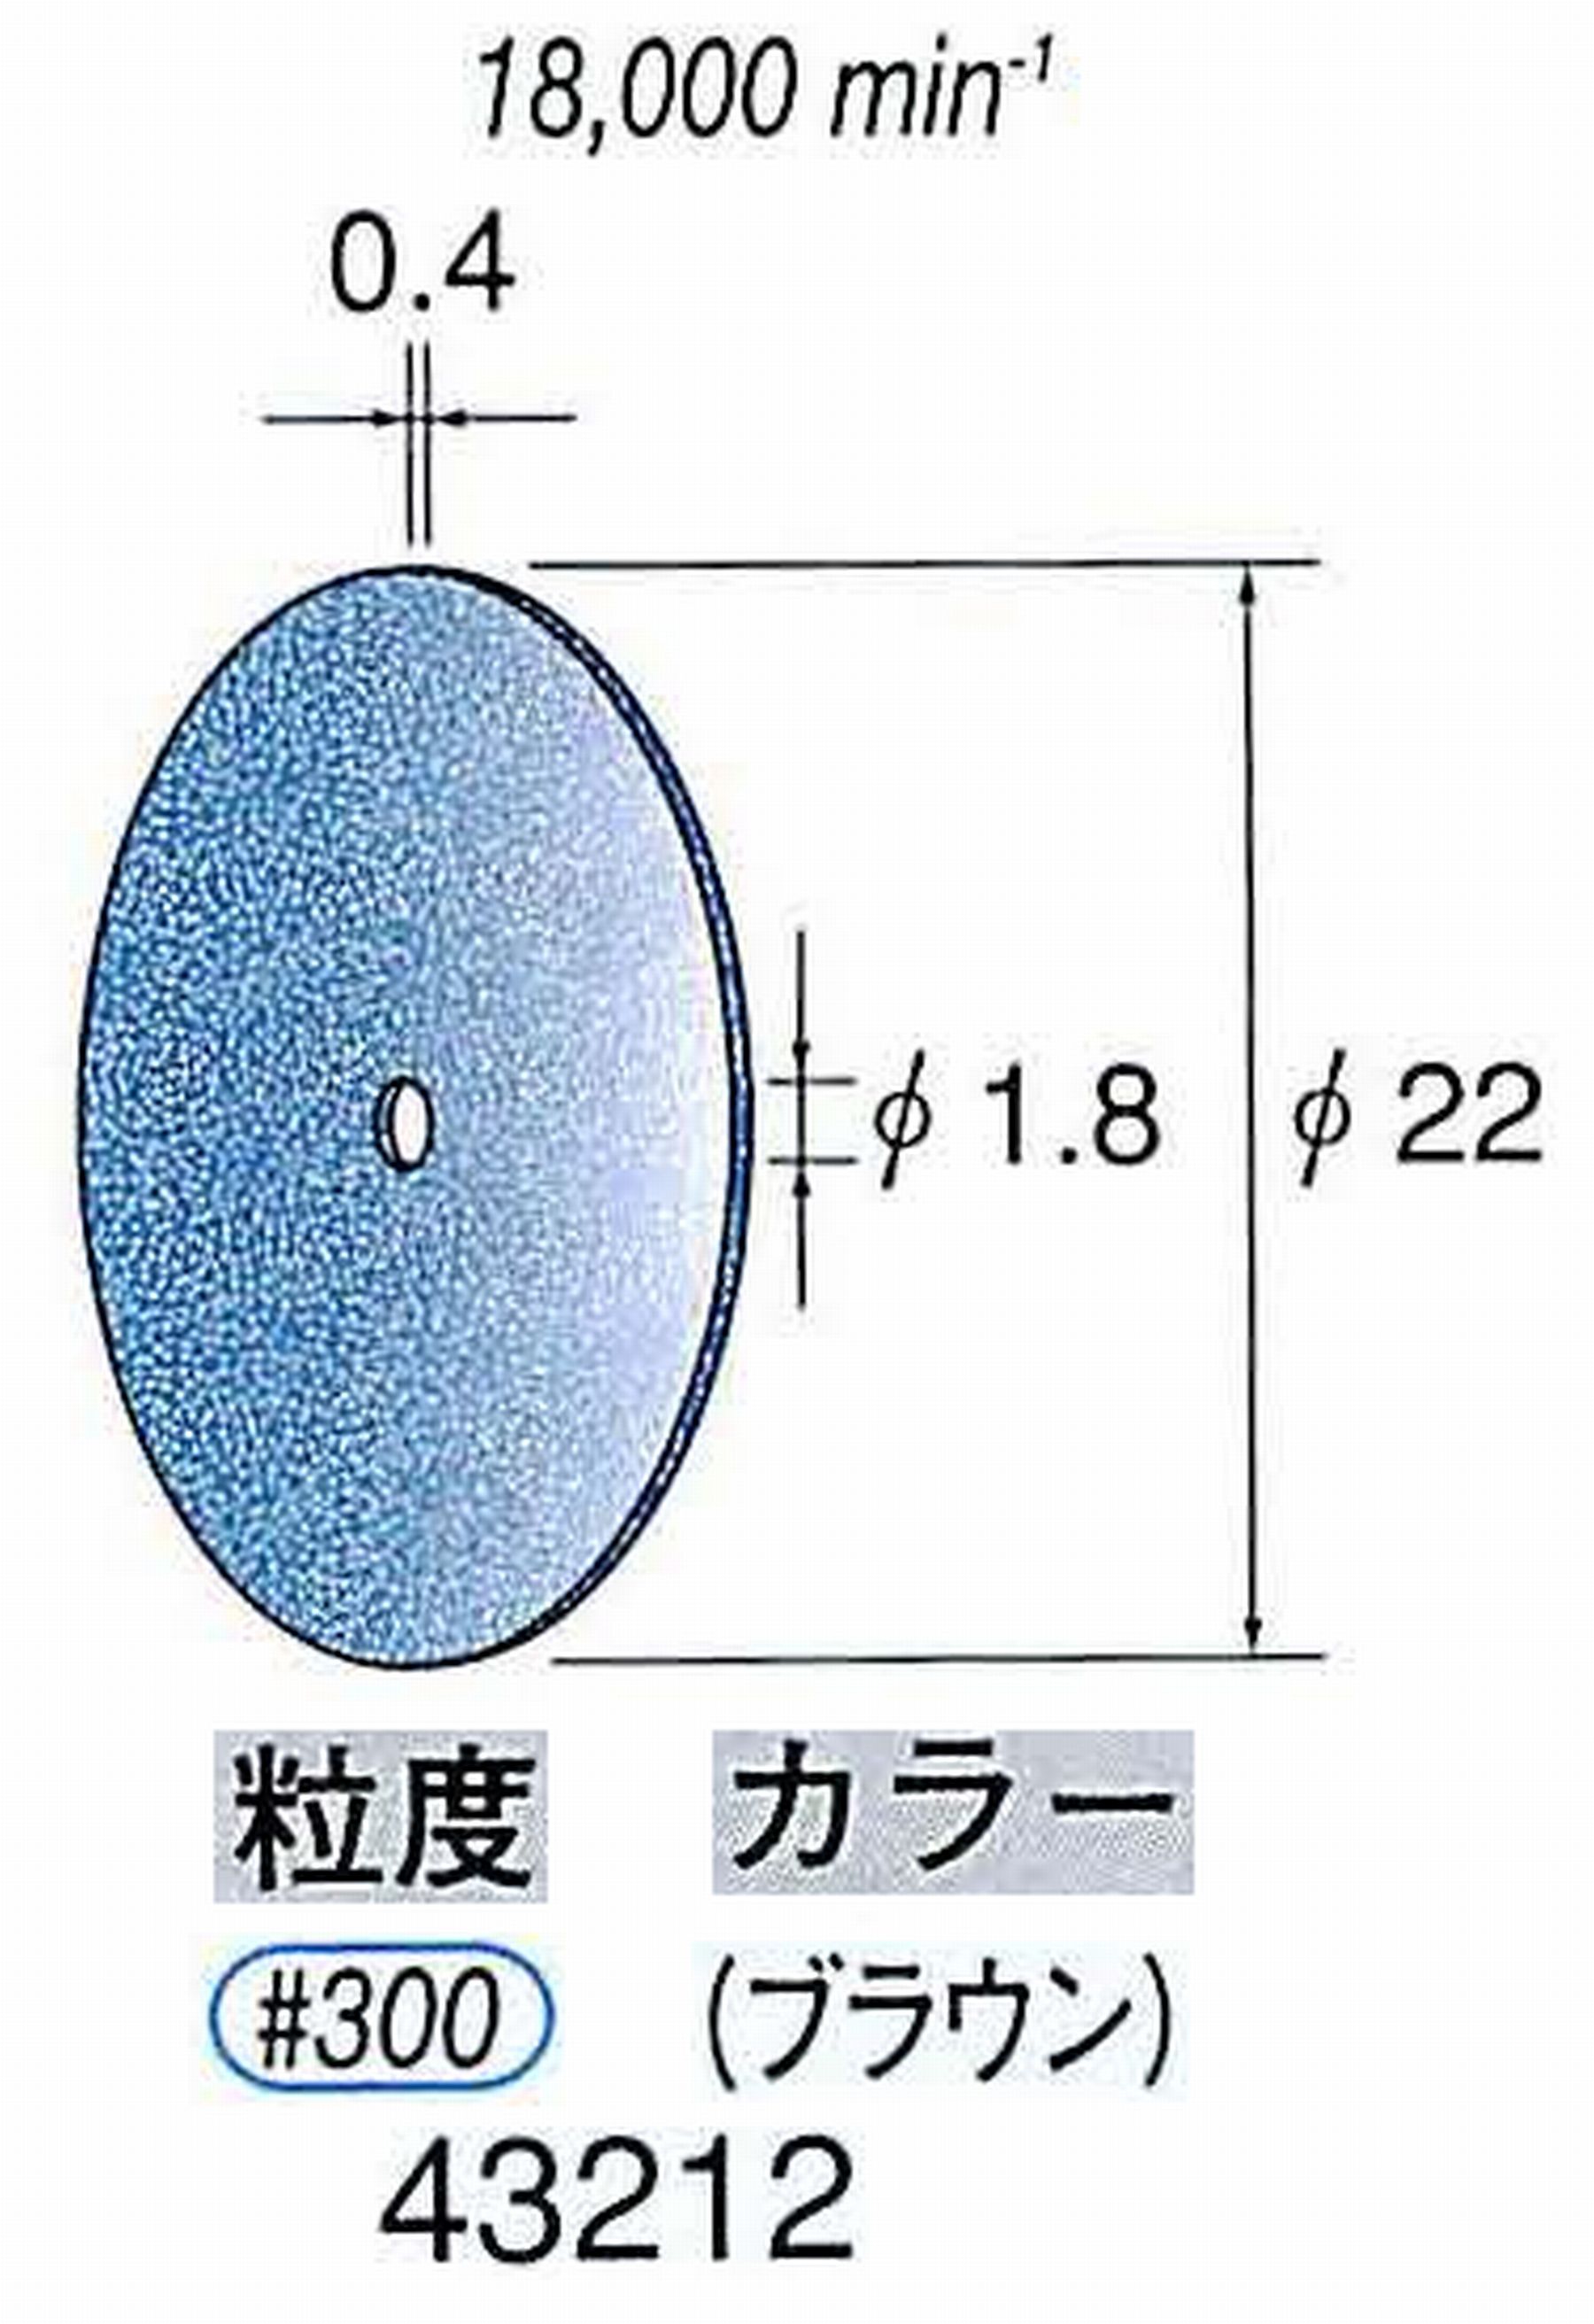 ナカニシ/NAKANISHI セラファイバー砥石ディスク(カラー ブラウン) 43212